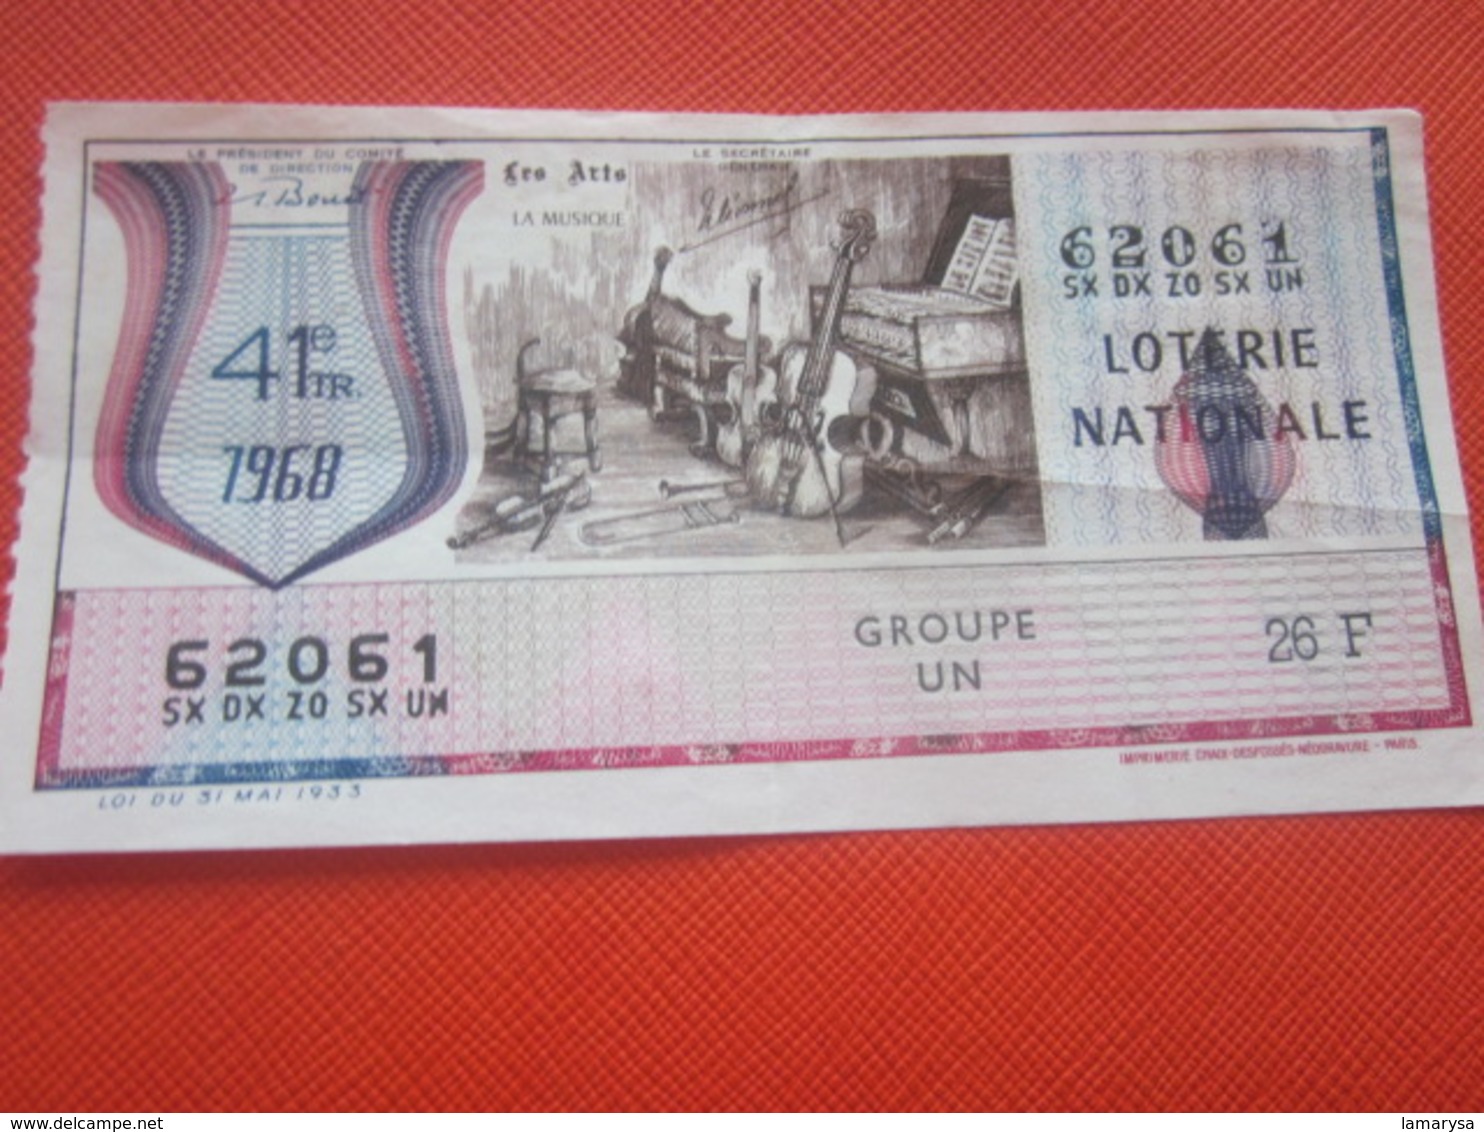 LES ARTS LA MUSIQUE VIOLONCELLE PIANO -Année 1968 -Billet De La Loterie Nationale-imprimé En Taille Douce - Lottery Tickets